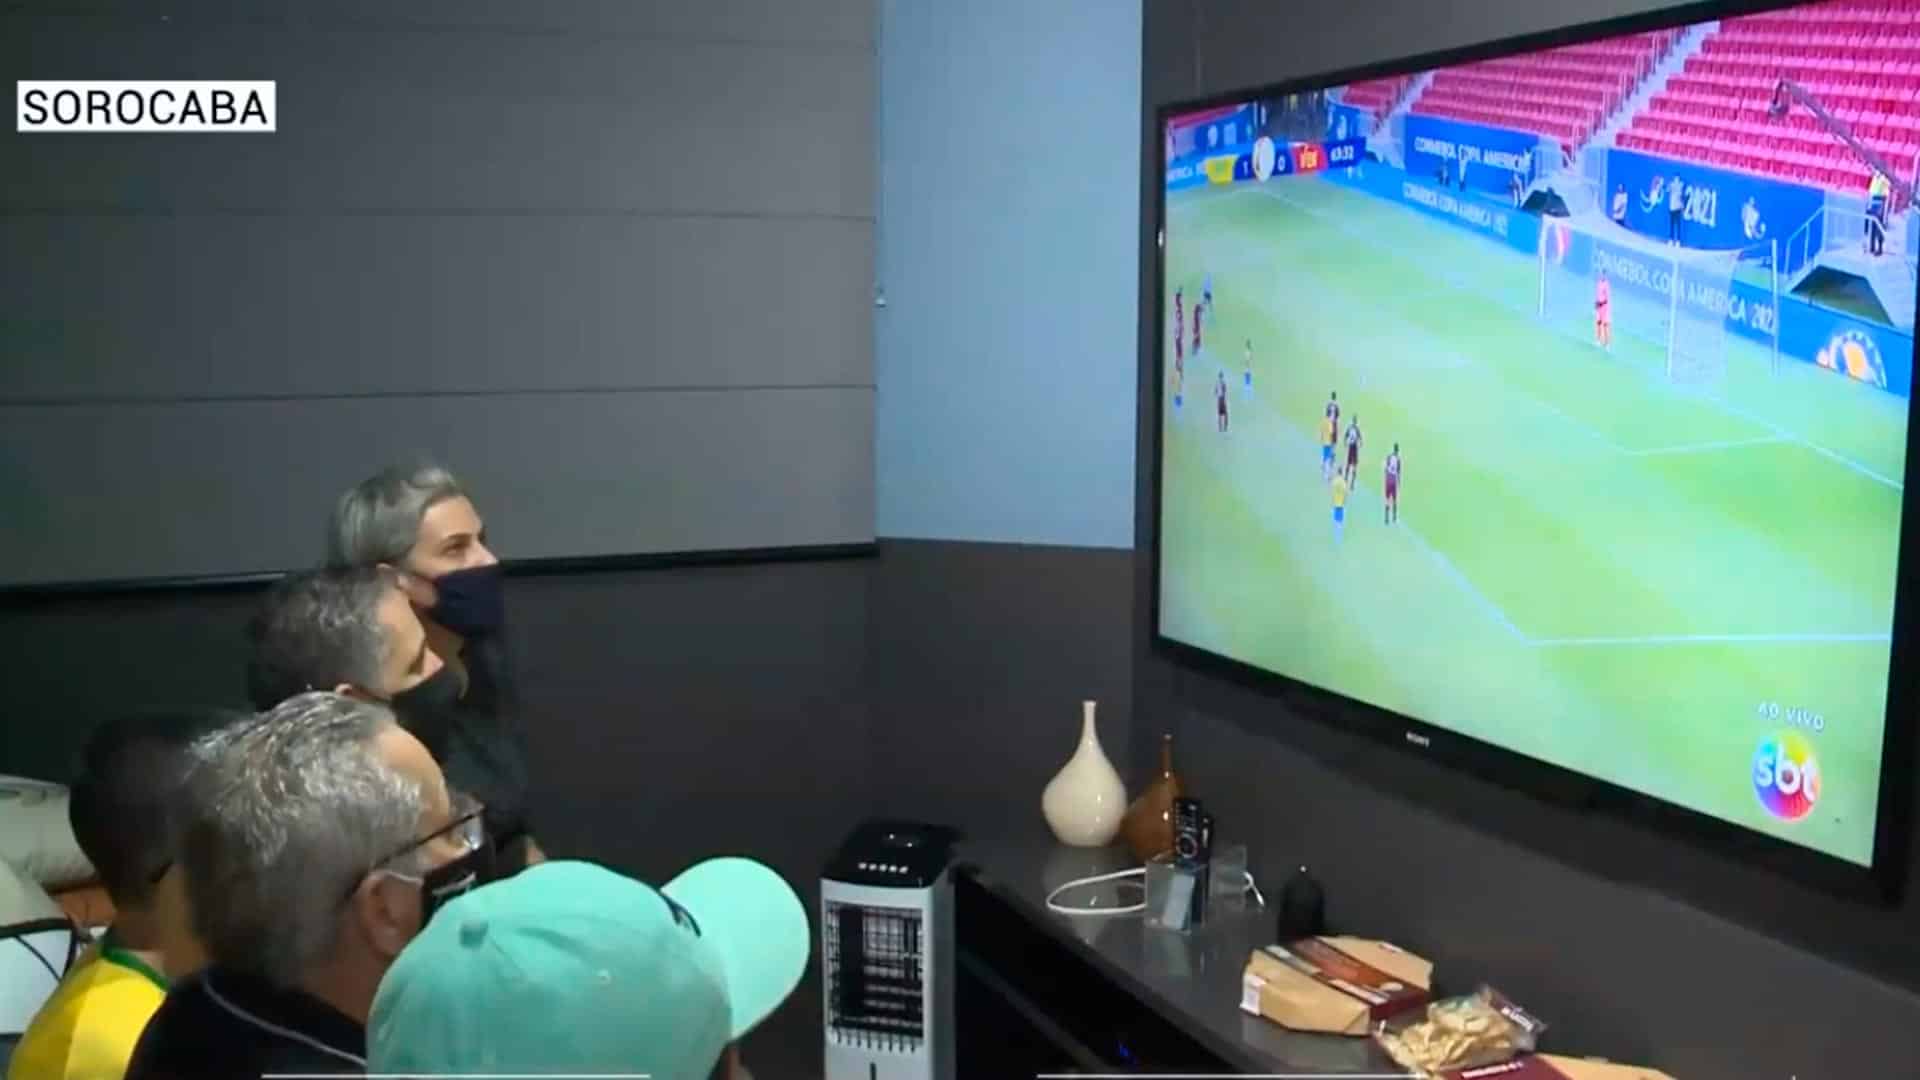 Parceiros da TV Sorocaba SBT recebem pizza durante jogo do Brasil na Copa América